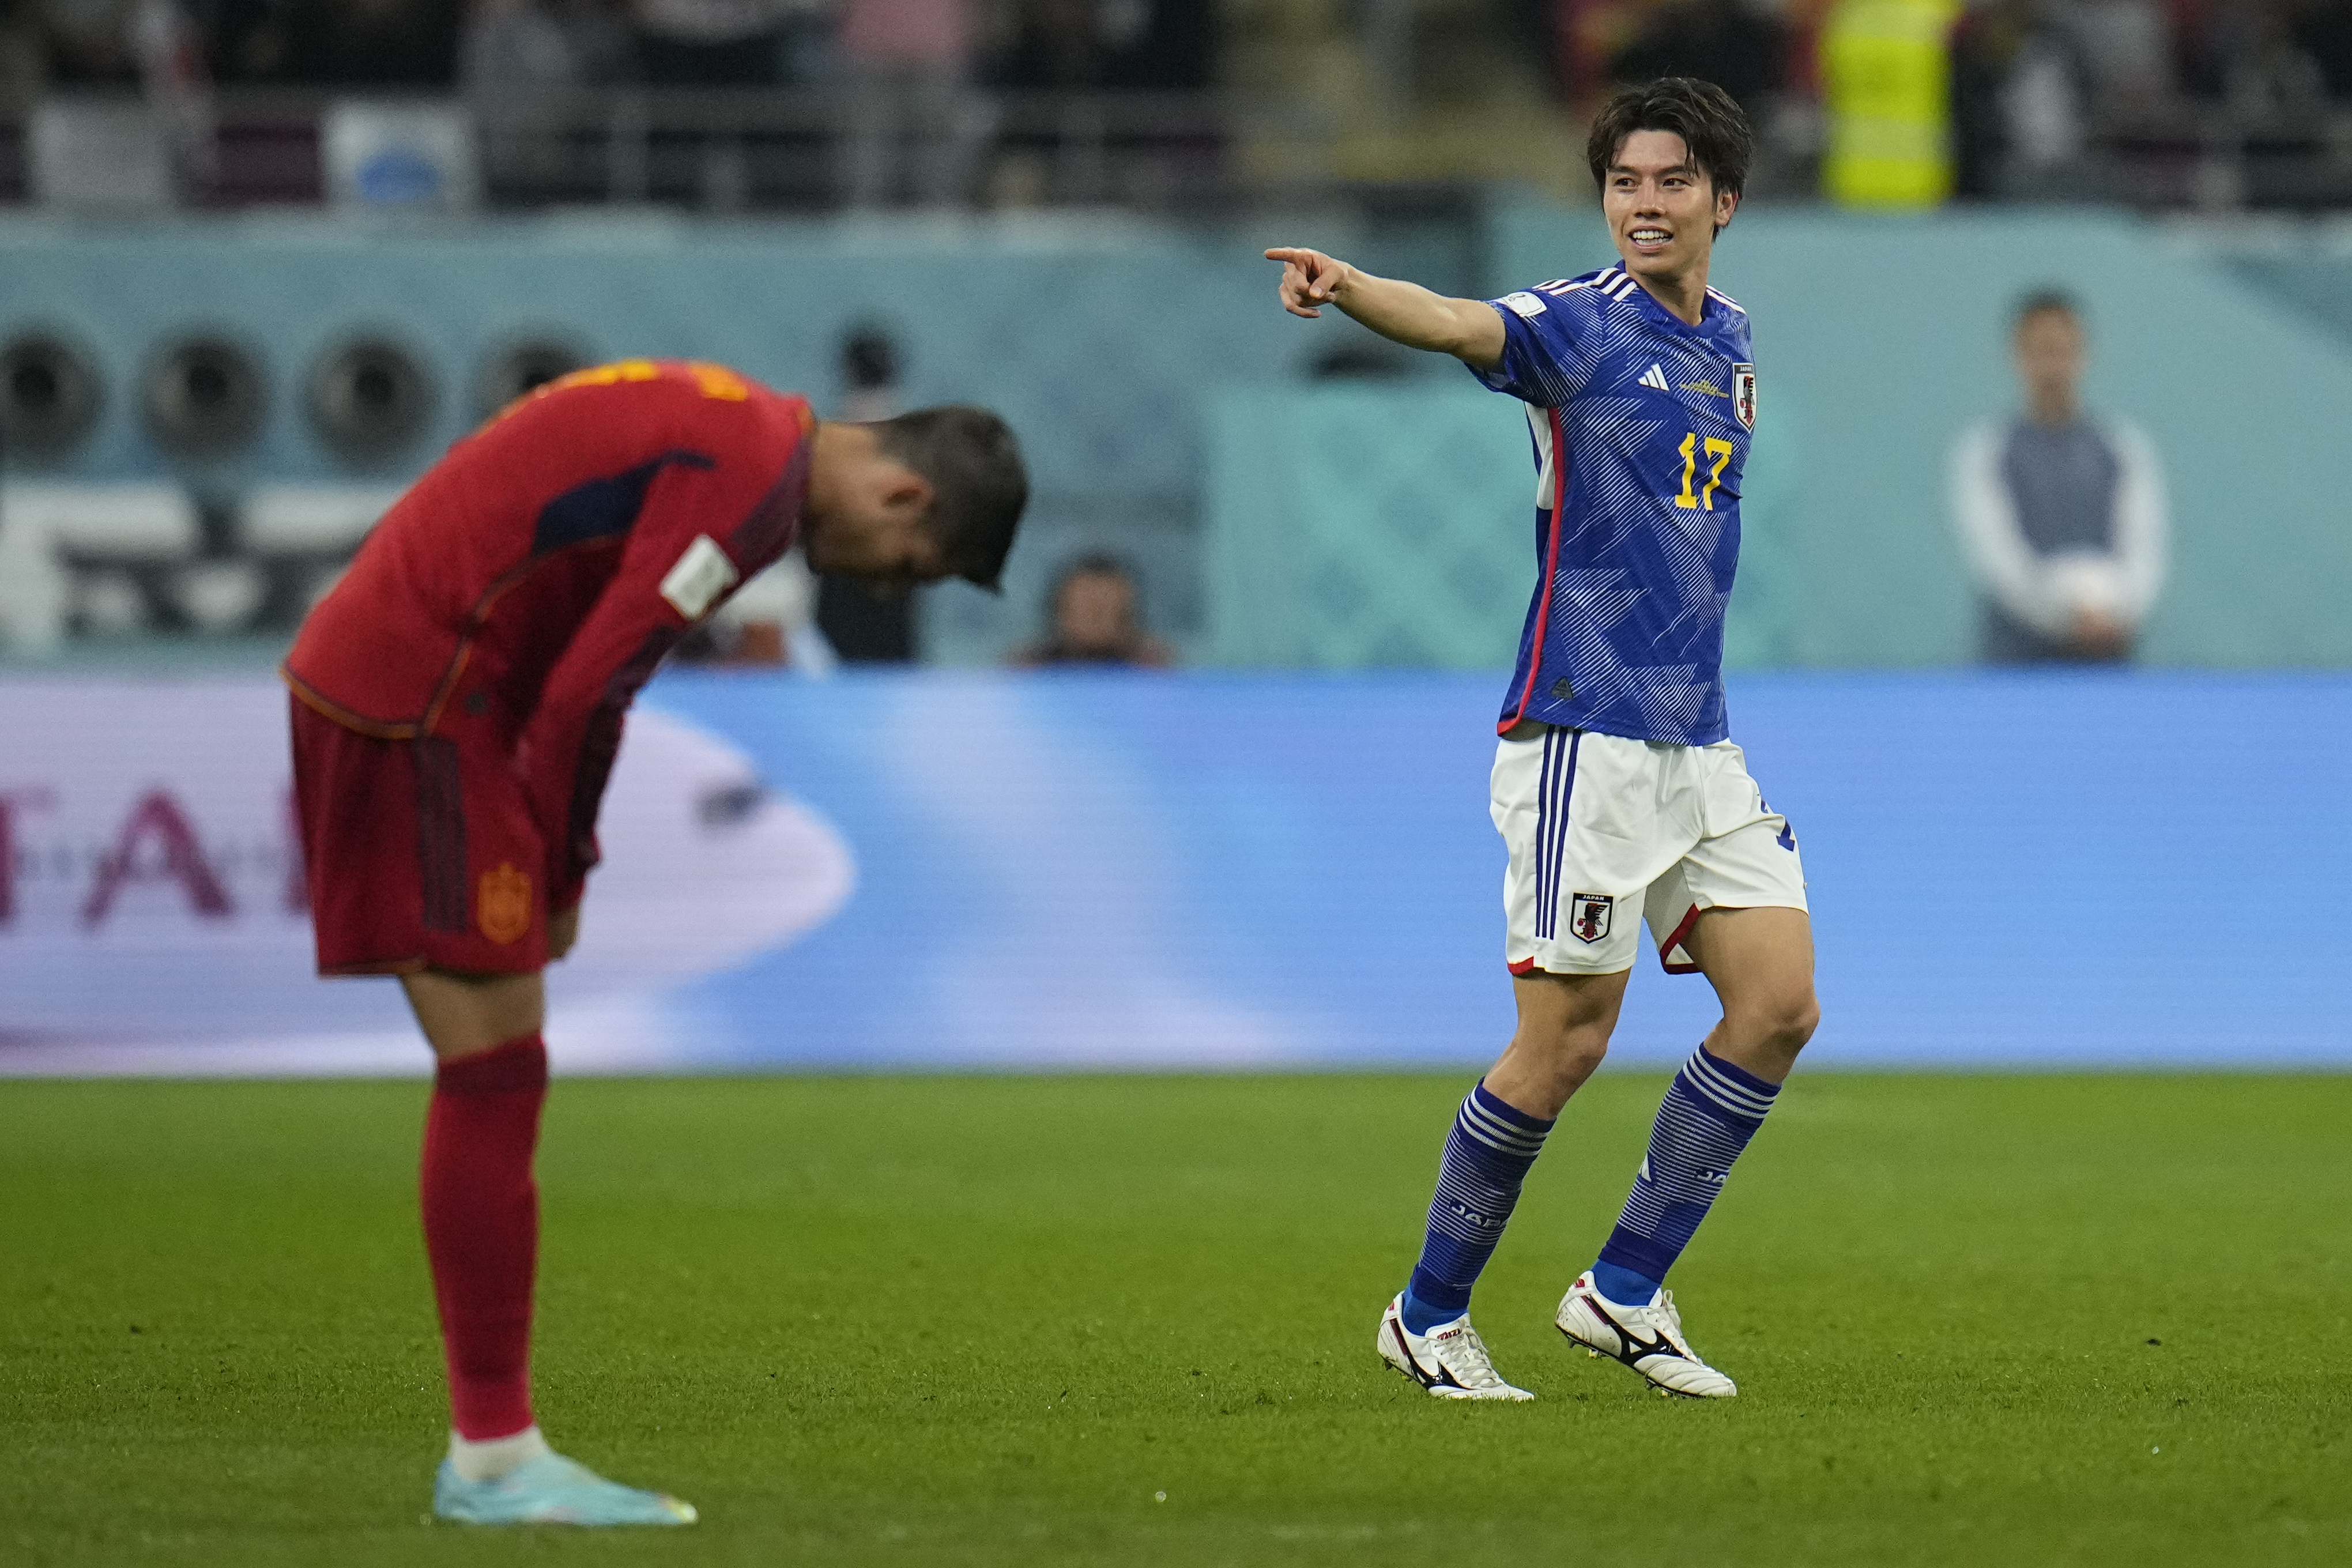 Vb-2022 – Japán legyőzte Spanyolországot, mindkét csapat nyolcaddöntős